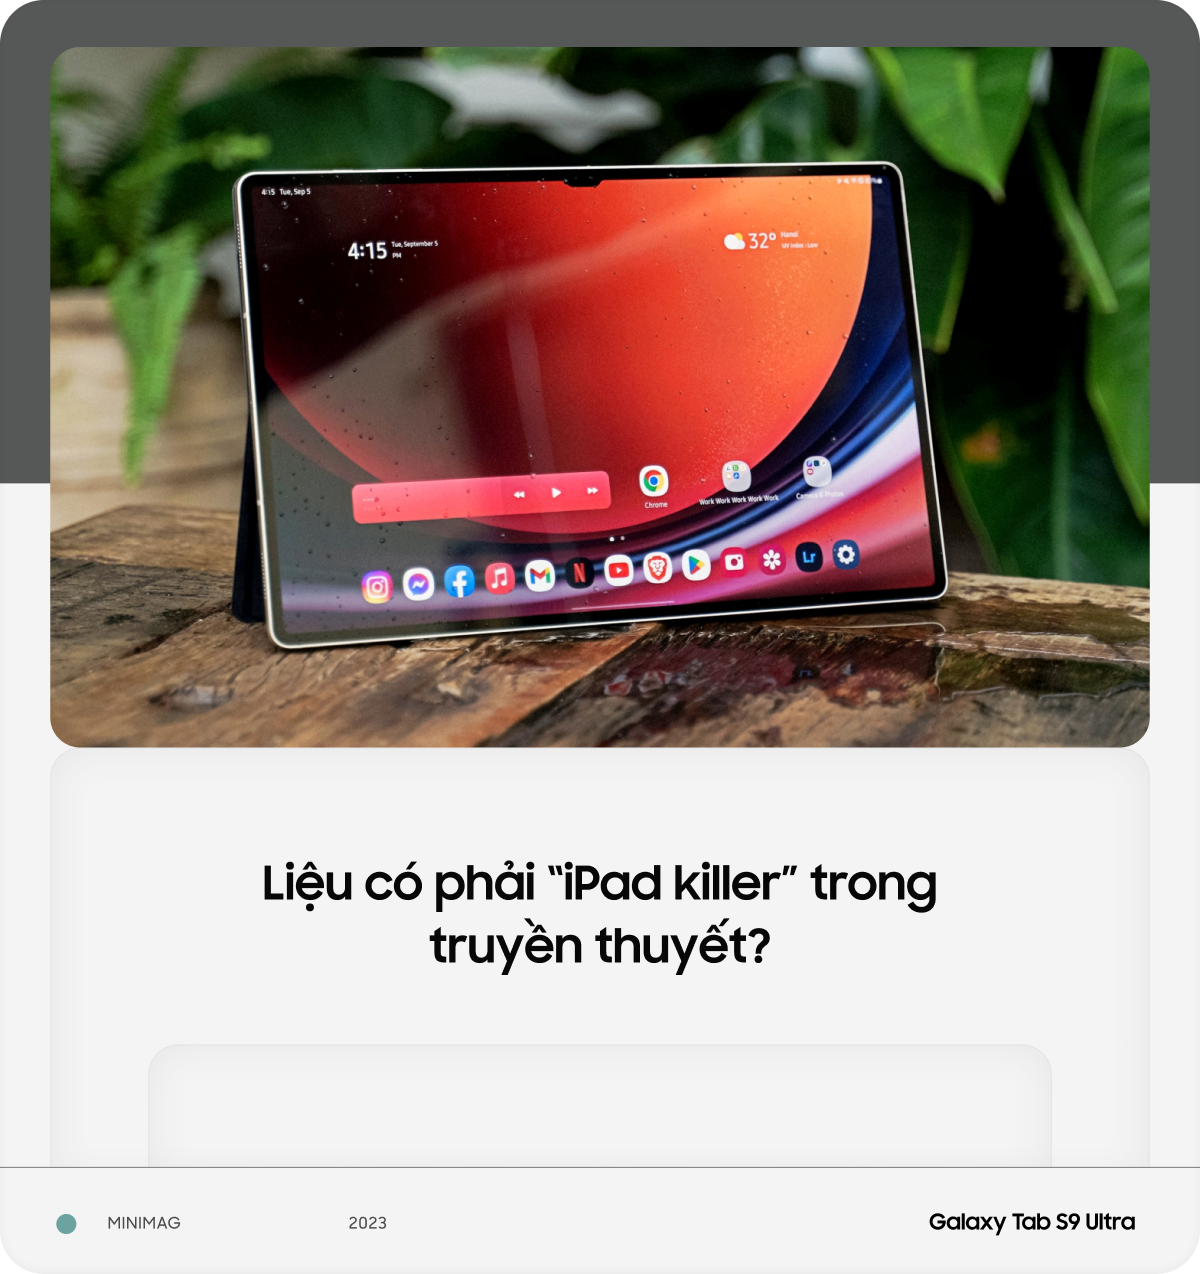 Trải nghiệm thực tế Galaxy S9 Ultra: “iPad killer” là có thật? - Ảnh 19.